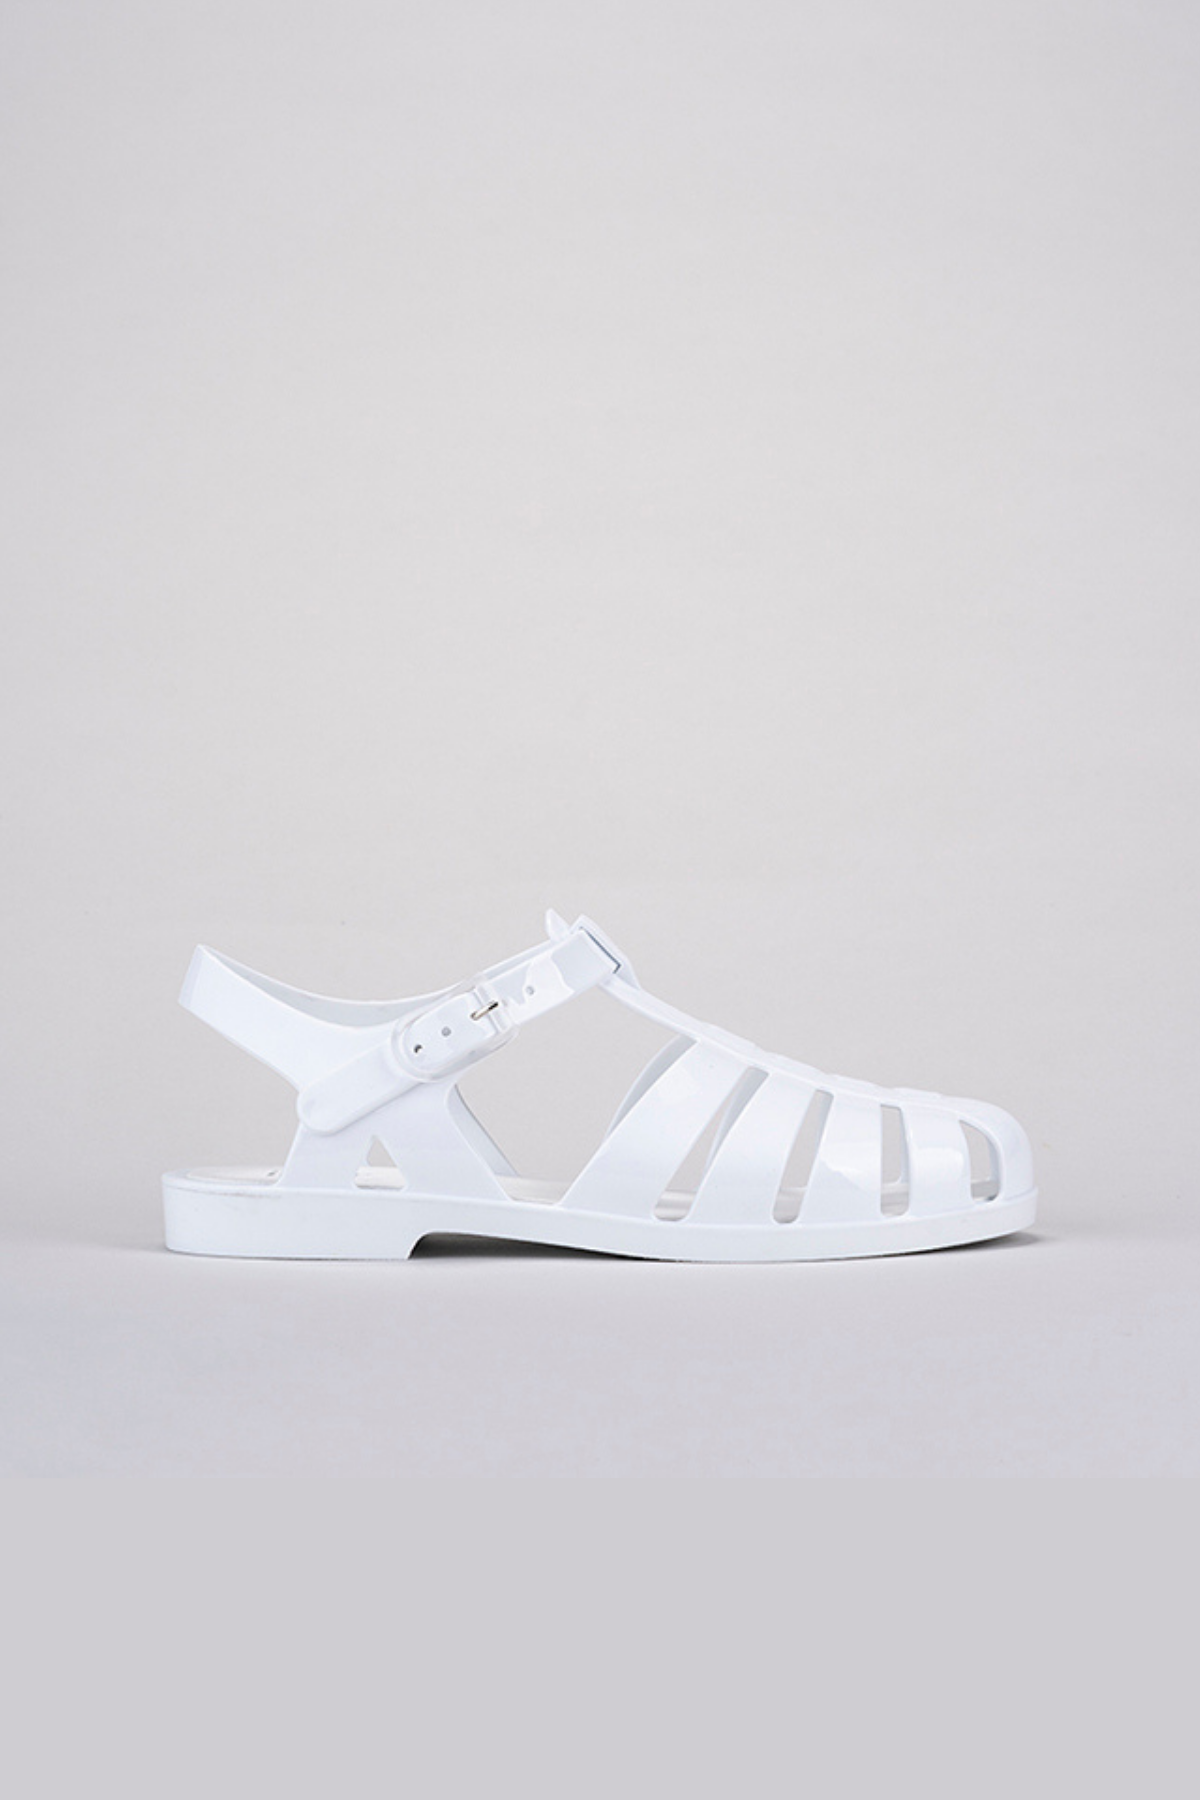 Igor Biarritz Brillo Kadın Beyaz Rugan Sandalet S10258-001